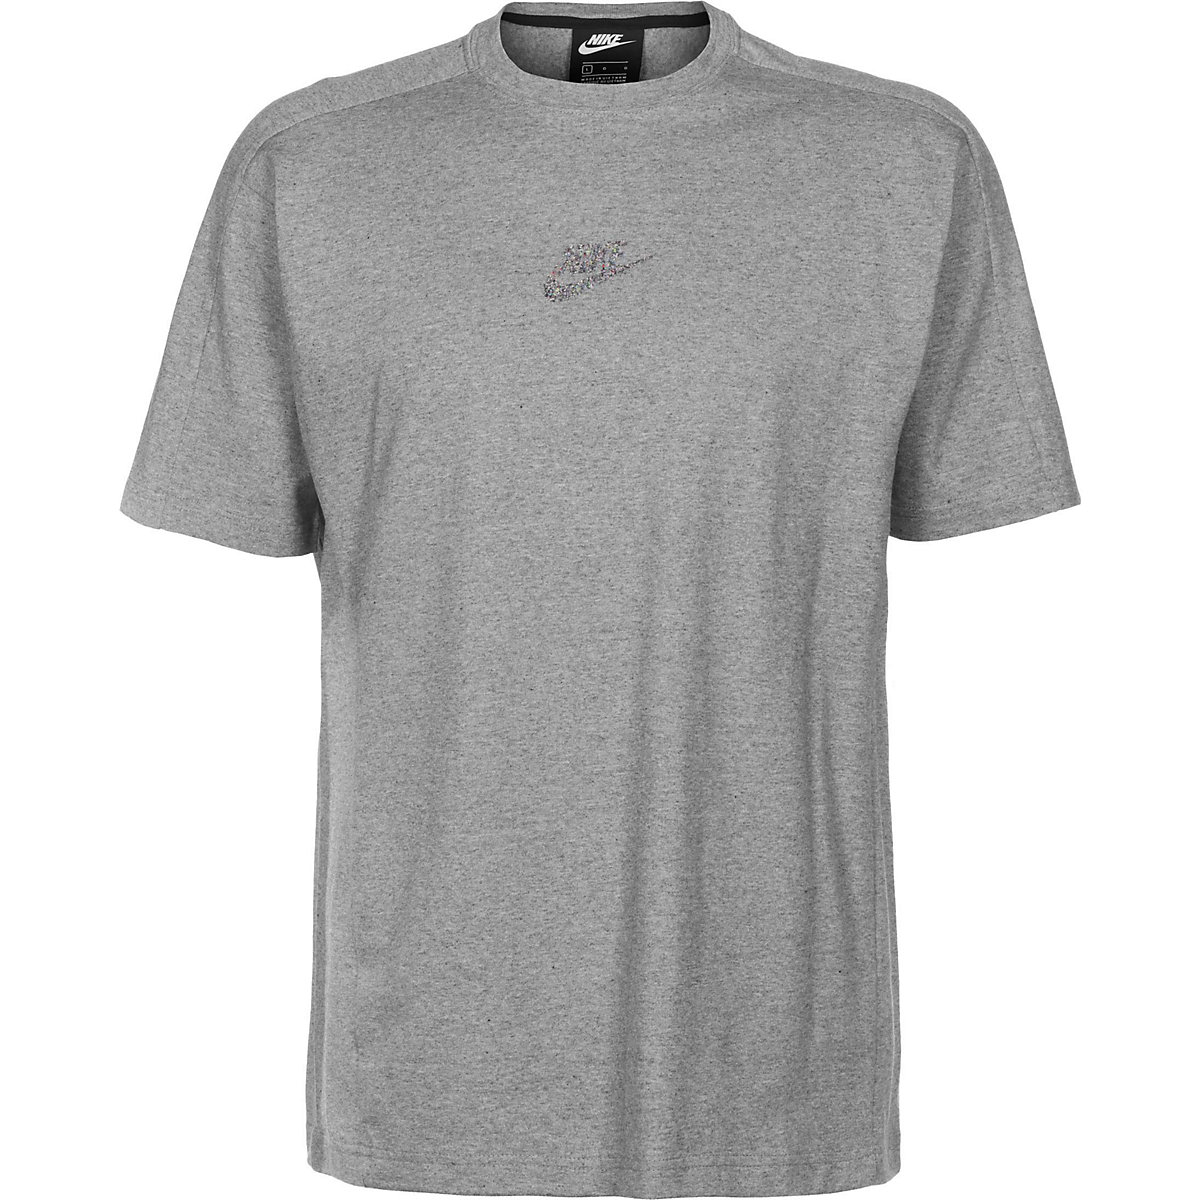 NIKE Nike T-Shirt Revival T-Shirts grau